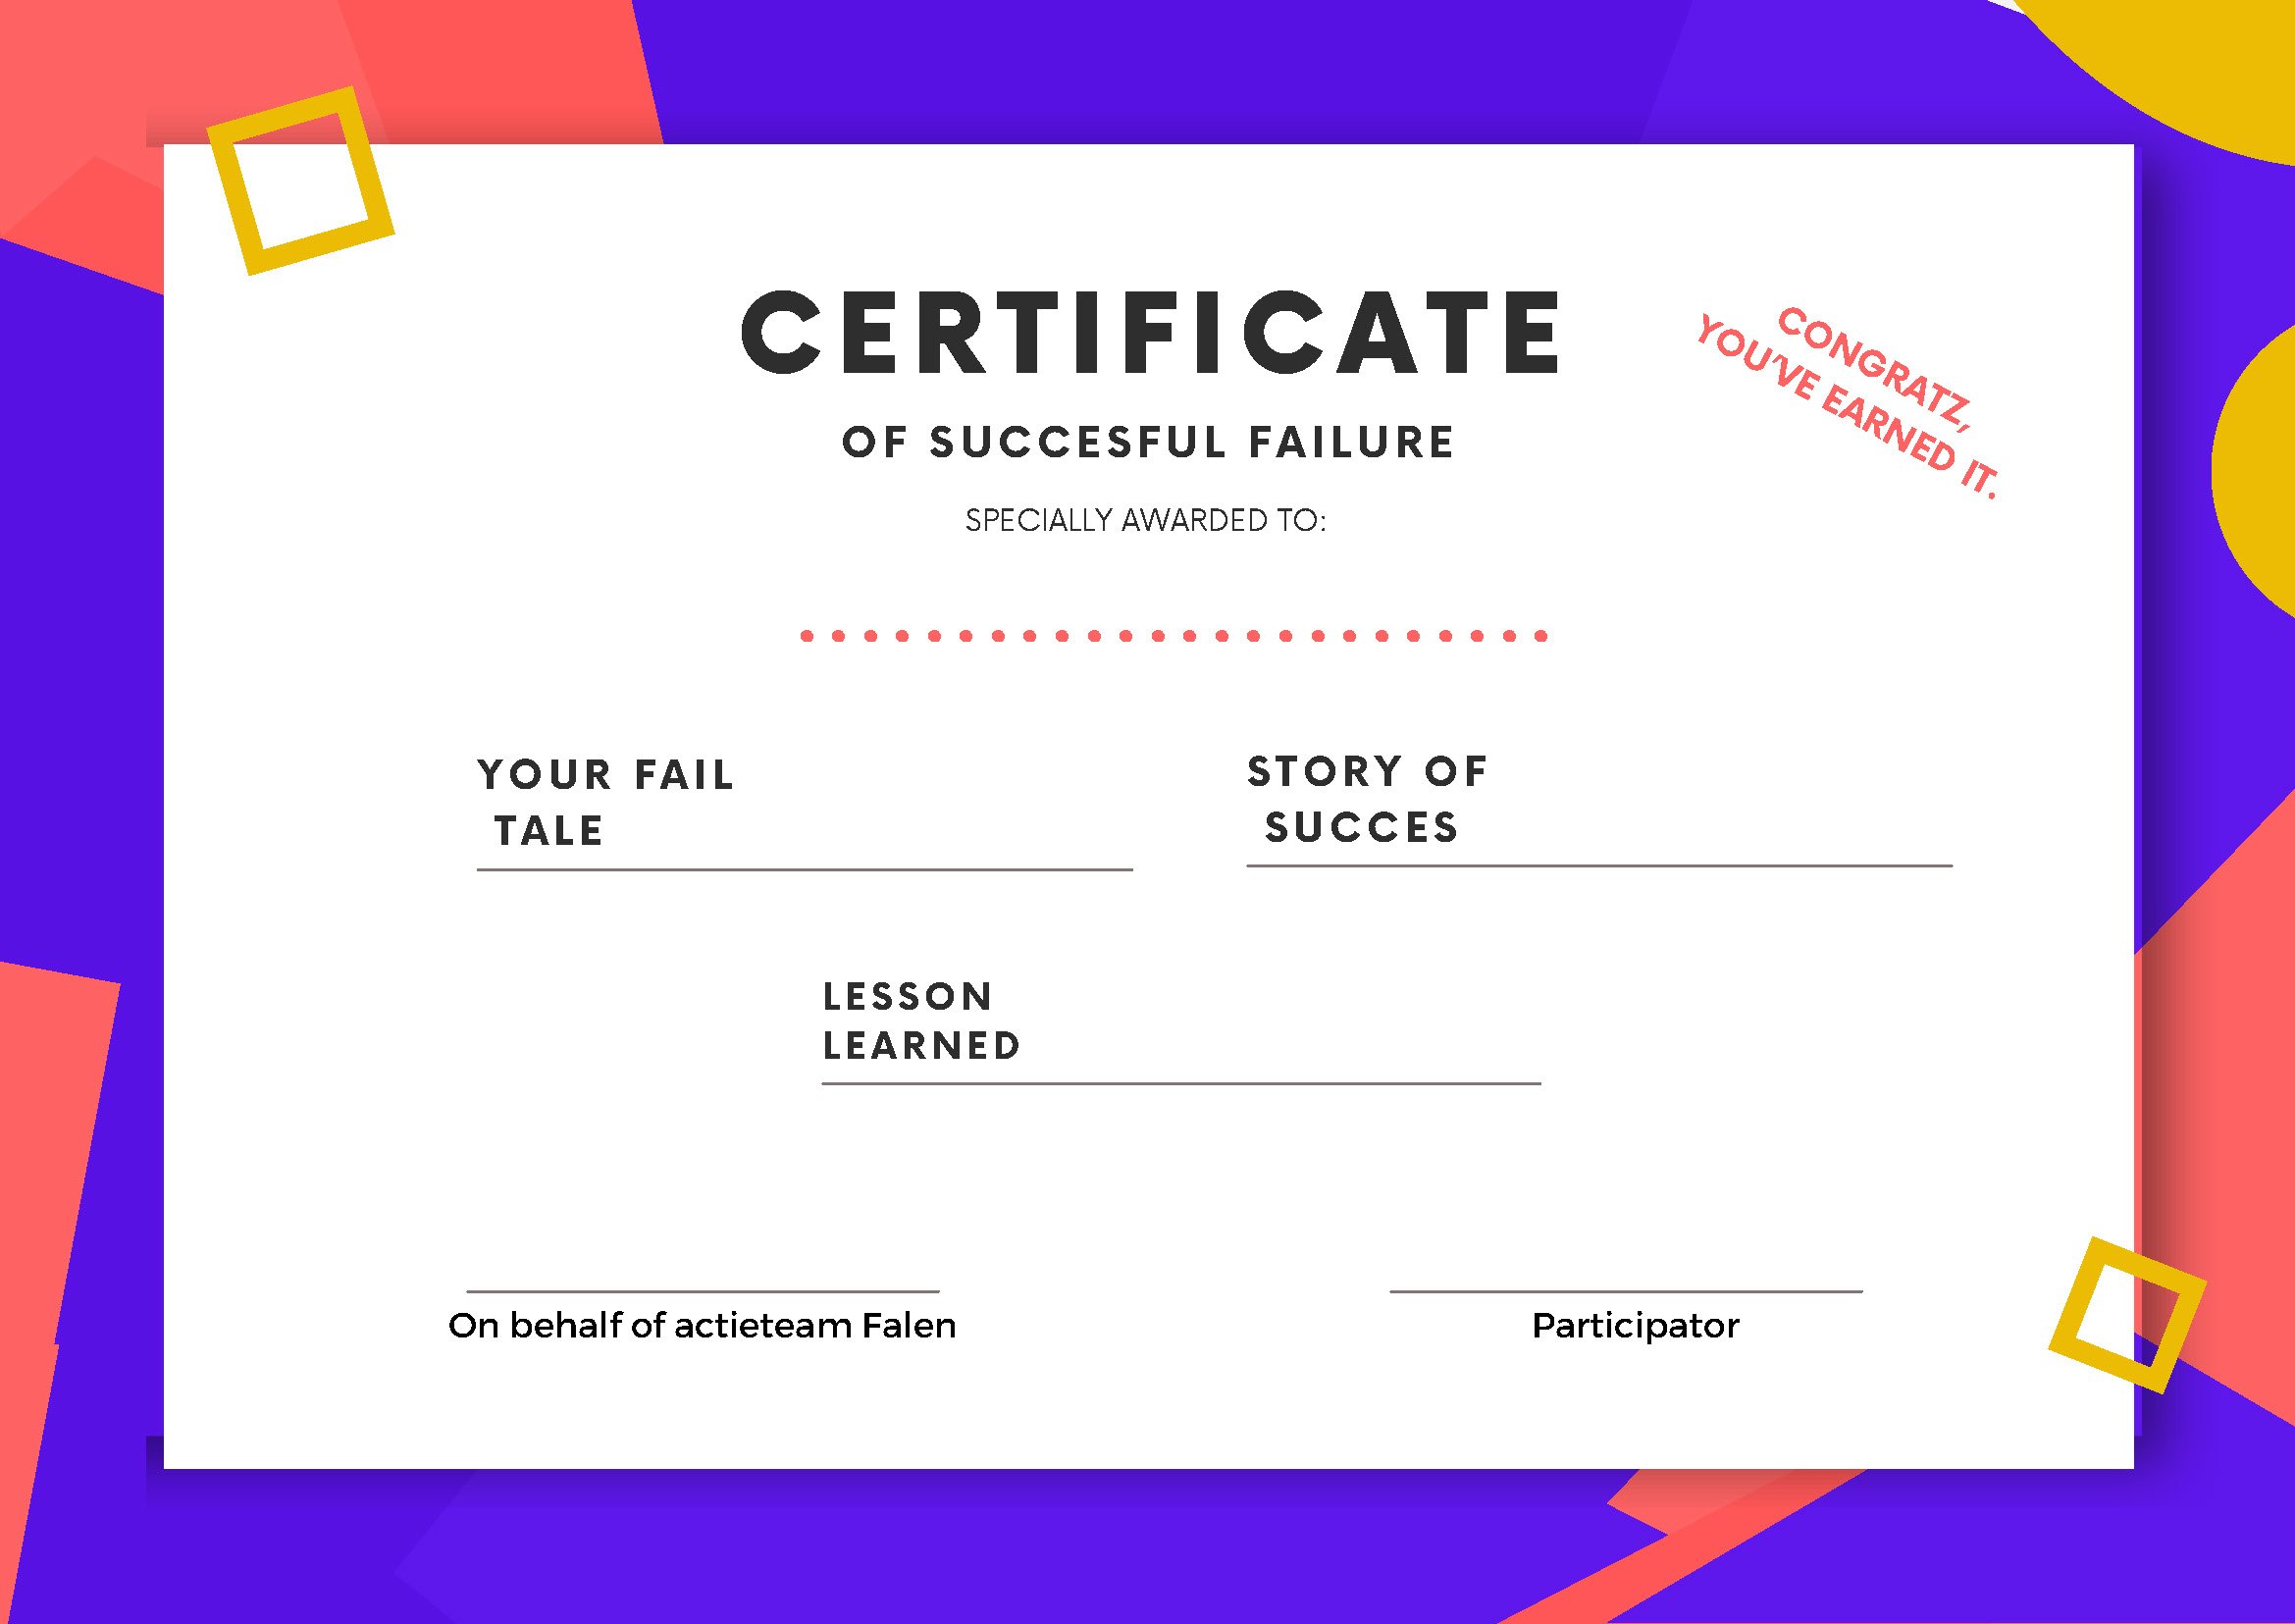 Certificate of succesful failure - EN_Pagina_1.jpg